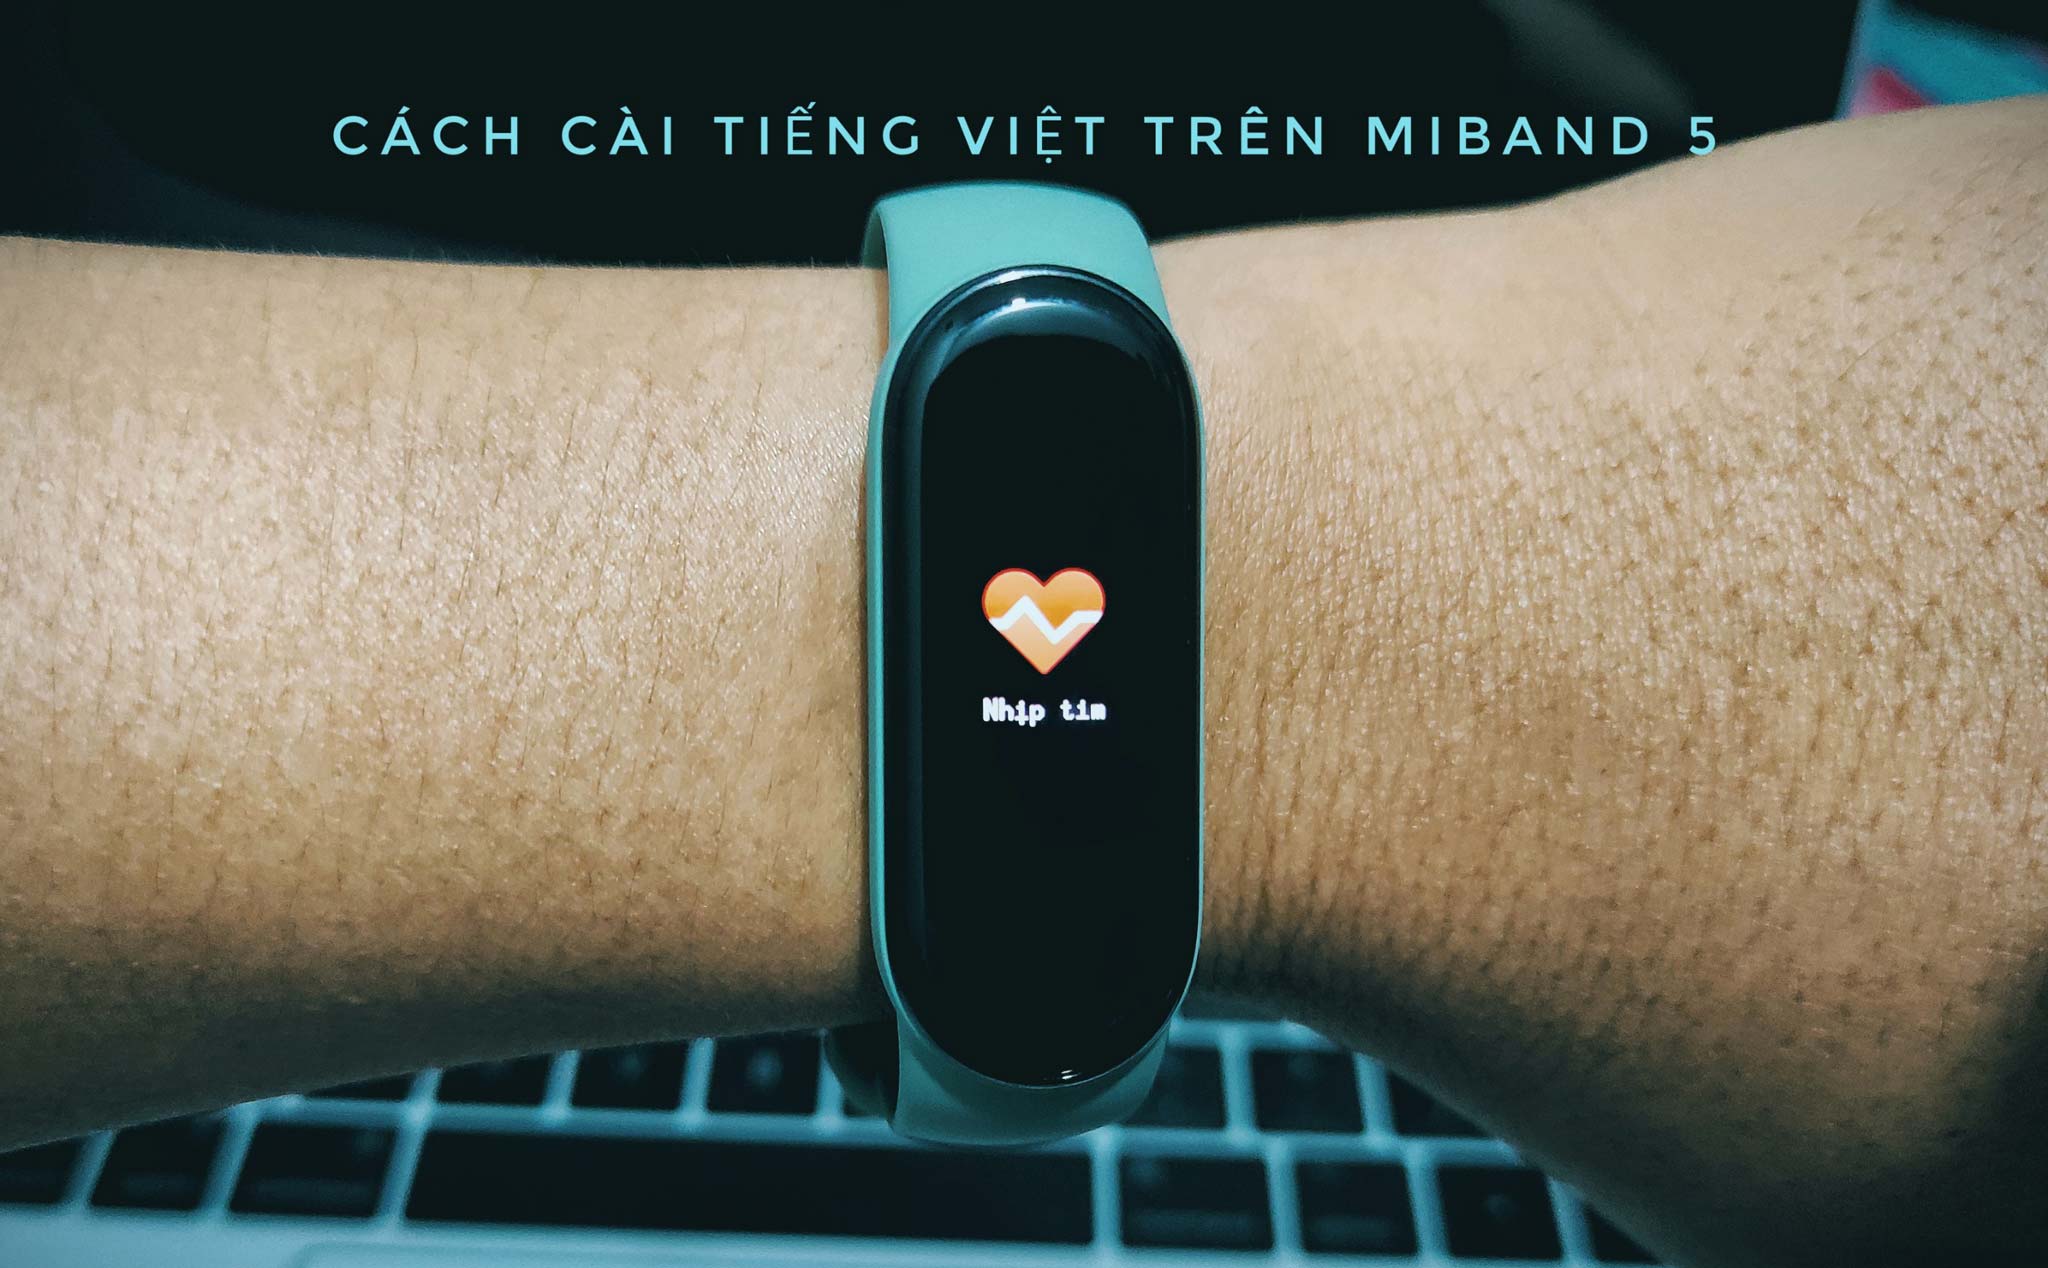 Hướng dẫn cài tiếng Việt trên Miband 5